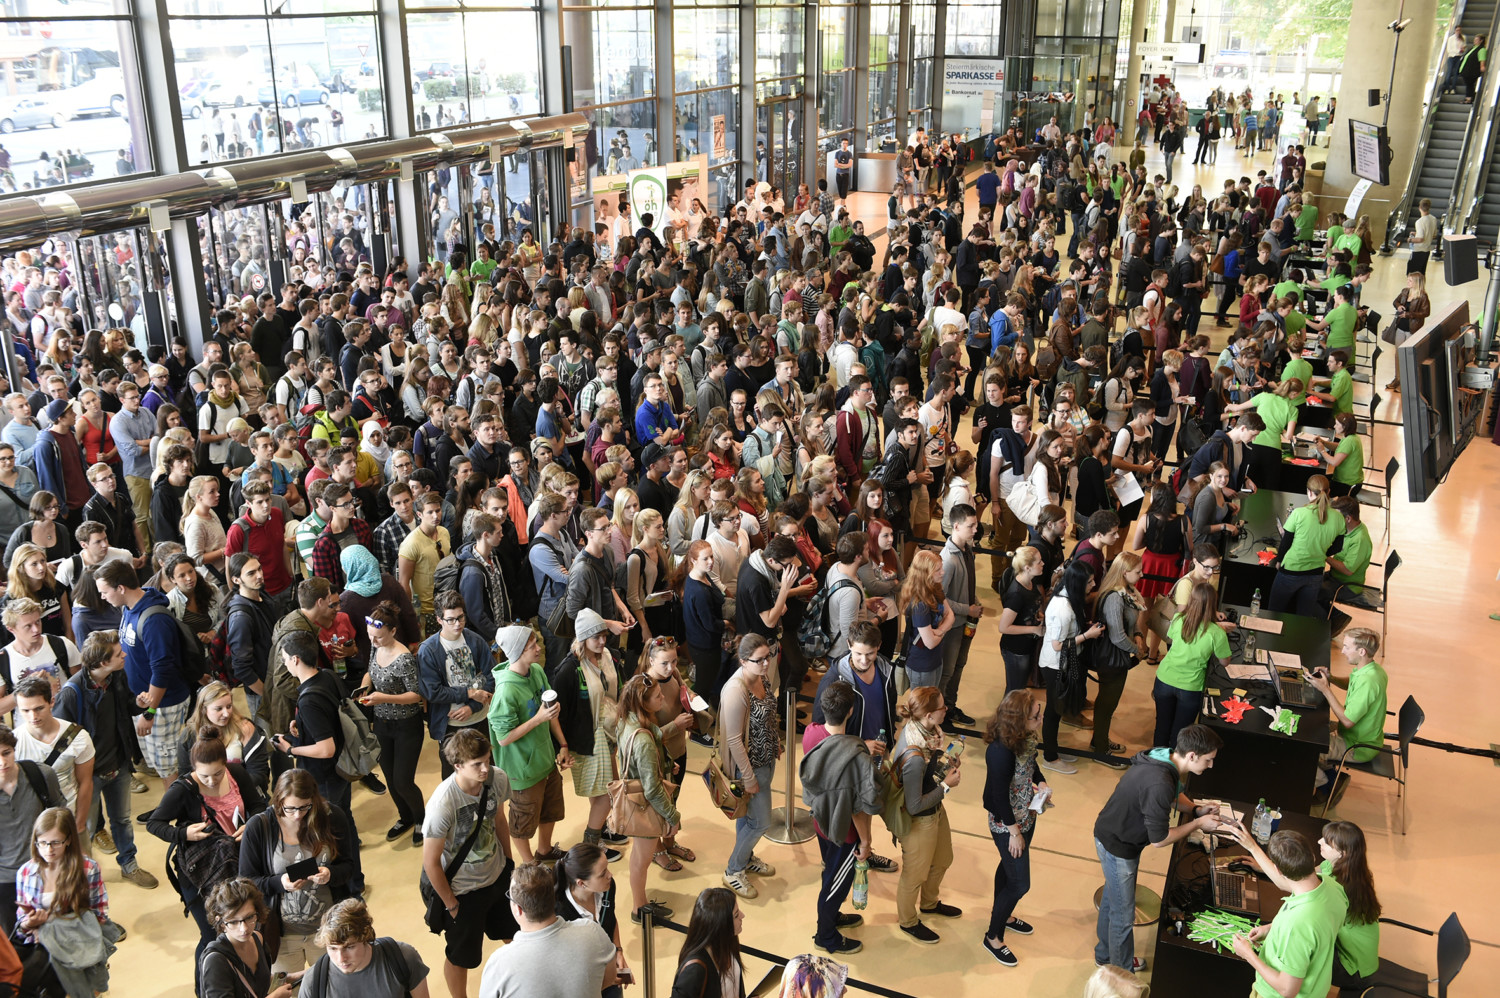 Aufnahmetest der Med Uni Graz in der Messehalle 2800 Teilnehmer